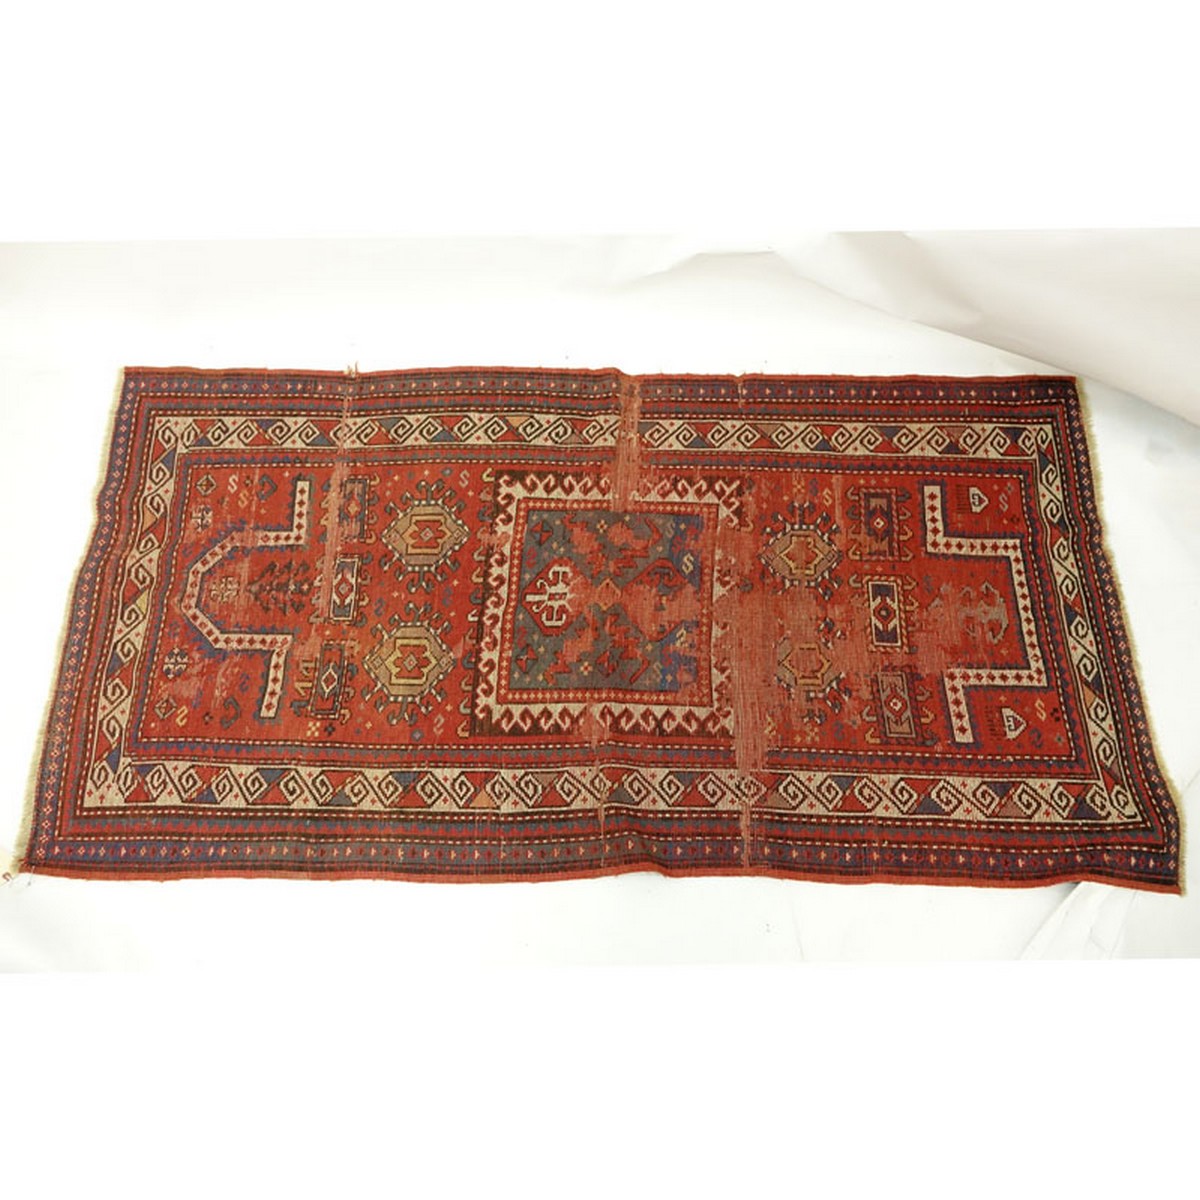 19th Century Caucasian Persian Rug. Unsigned.